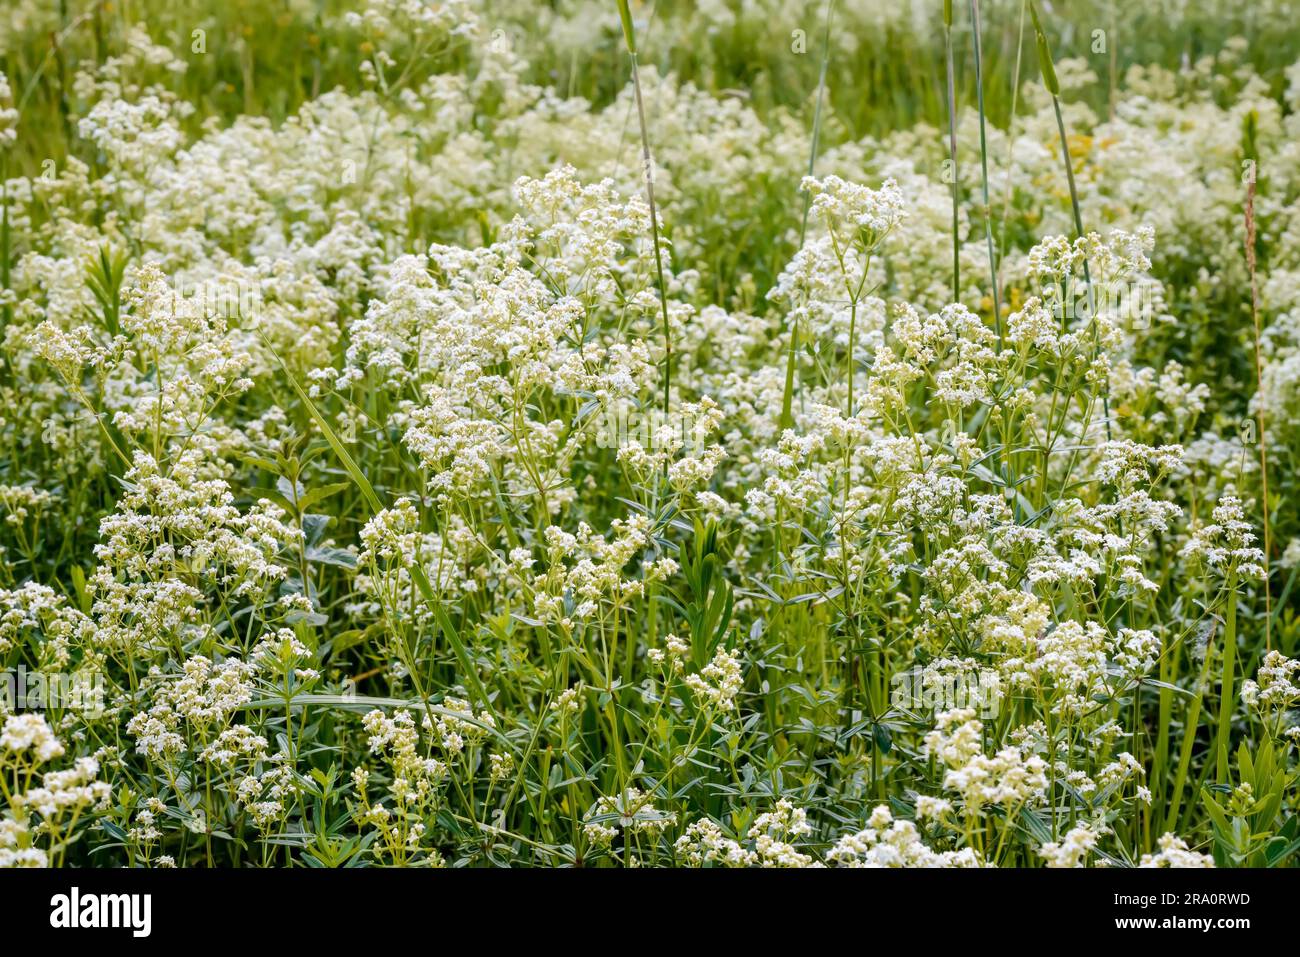 Le Galium boreale fleurs, également connu comme le gaillet du nord, dans un pré sous le chaud soleil de printemps Banque D'Images